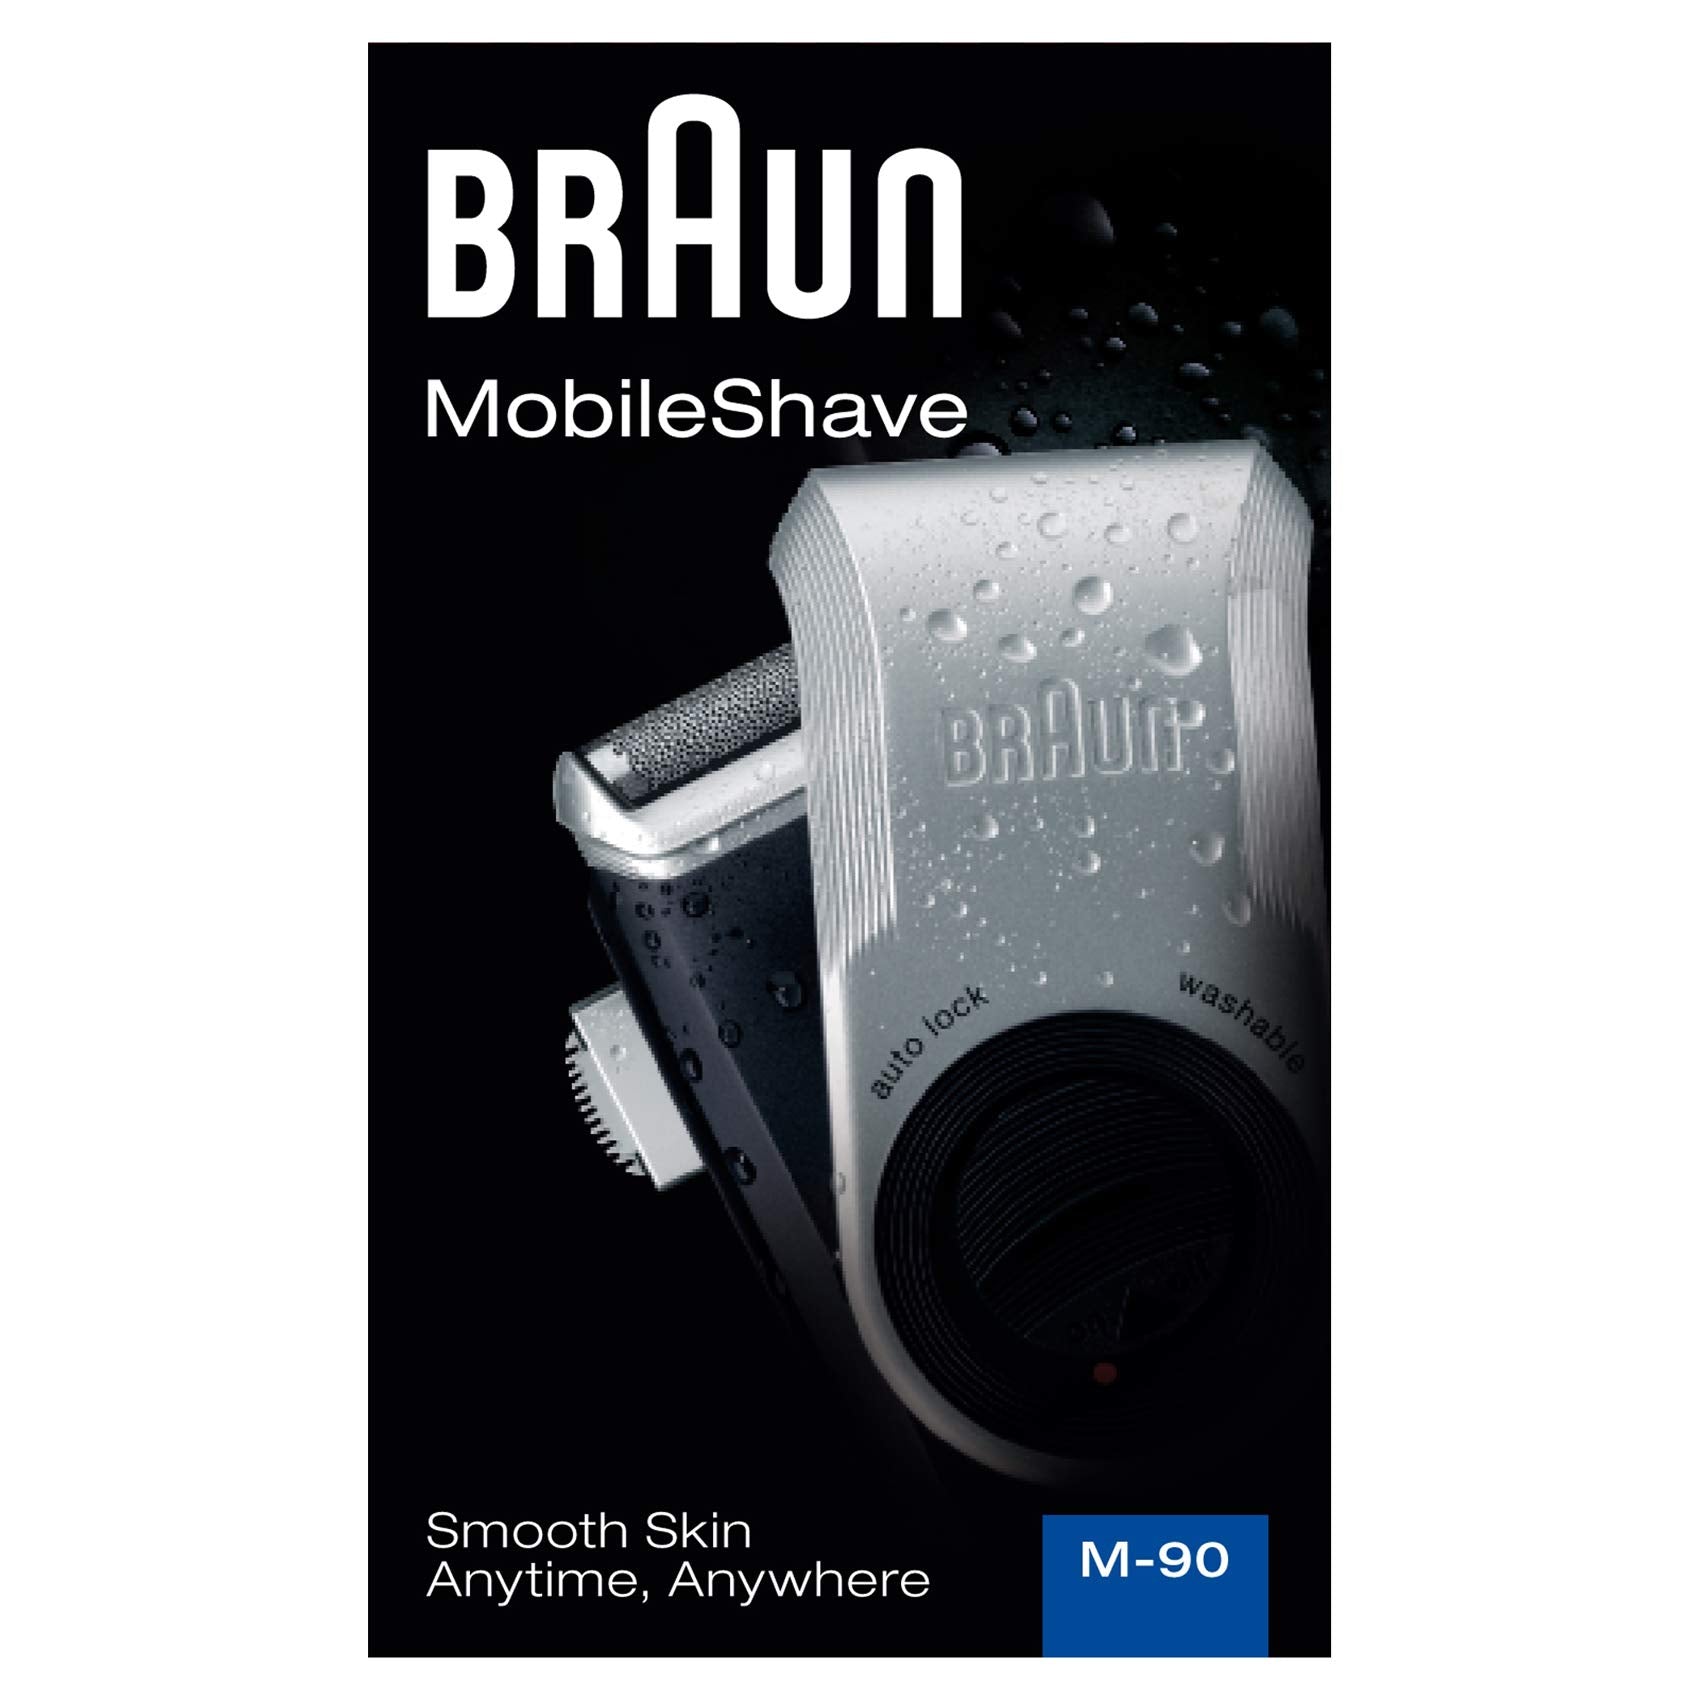 Braun MobileShave M-90 Travel Shaver Silver (Precision Trimmer, Smart Foil, Wide Floating Foil, Washable)